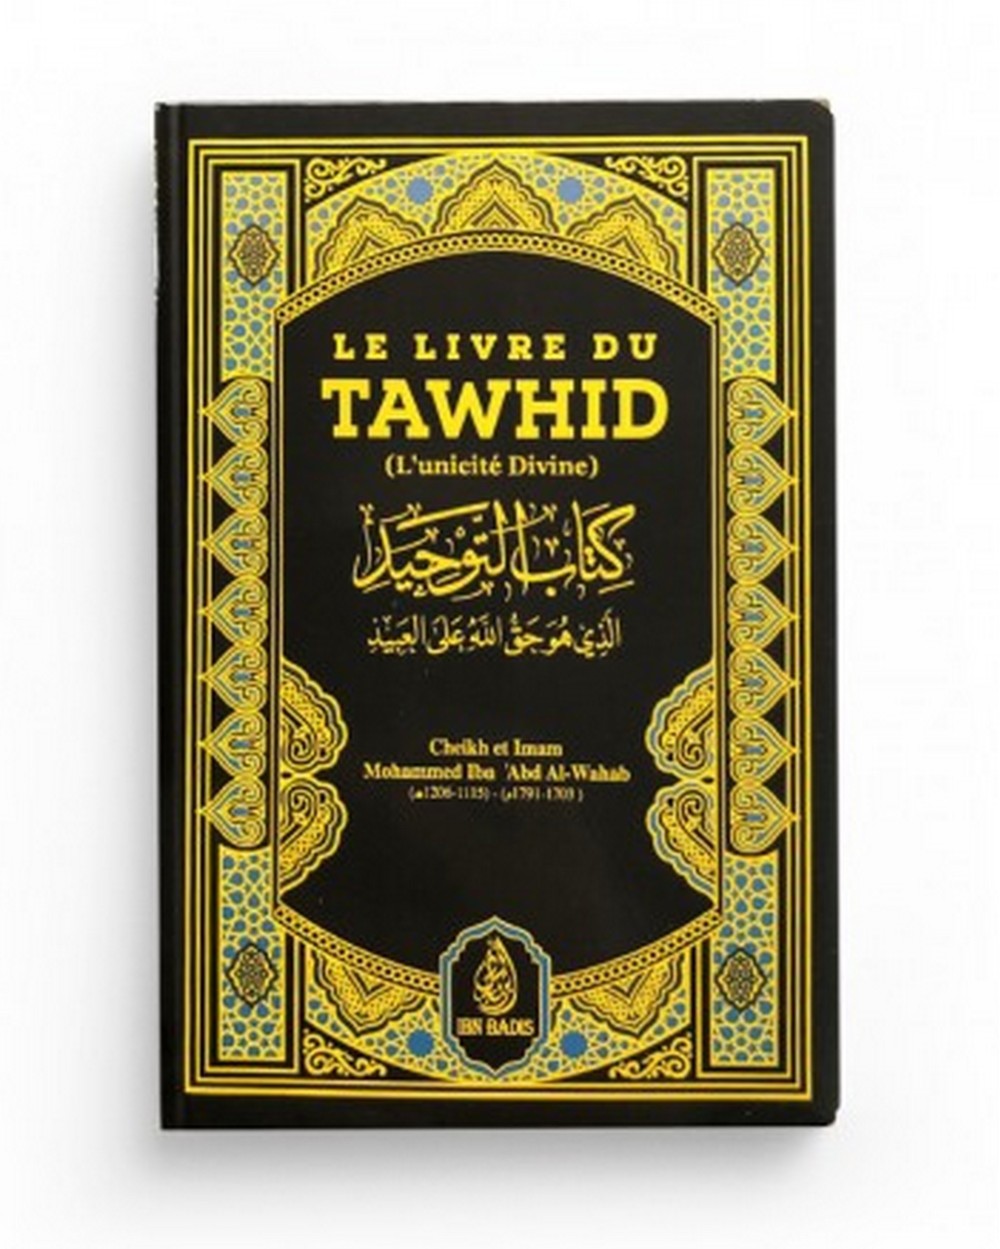 Le livre du TAWHID - Ibn Badis (Format de poche )